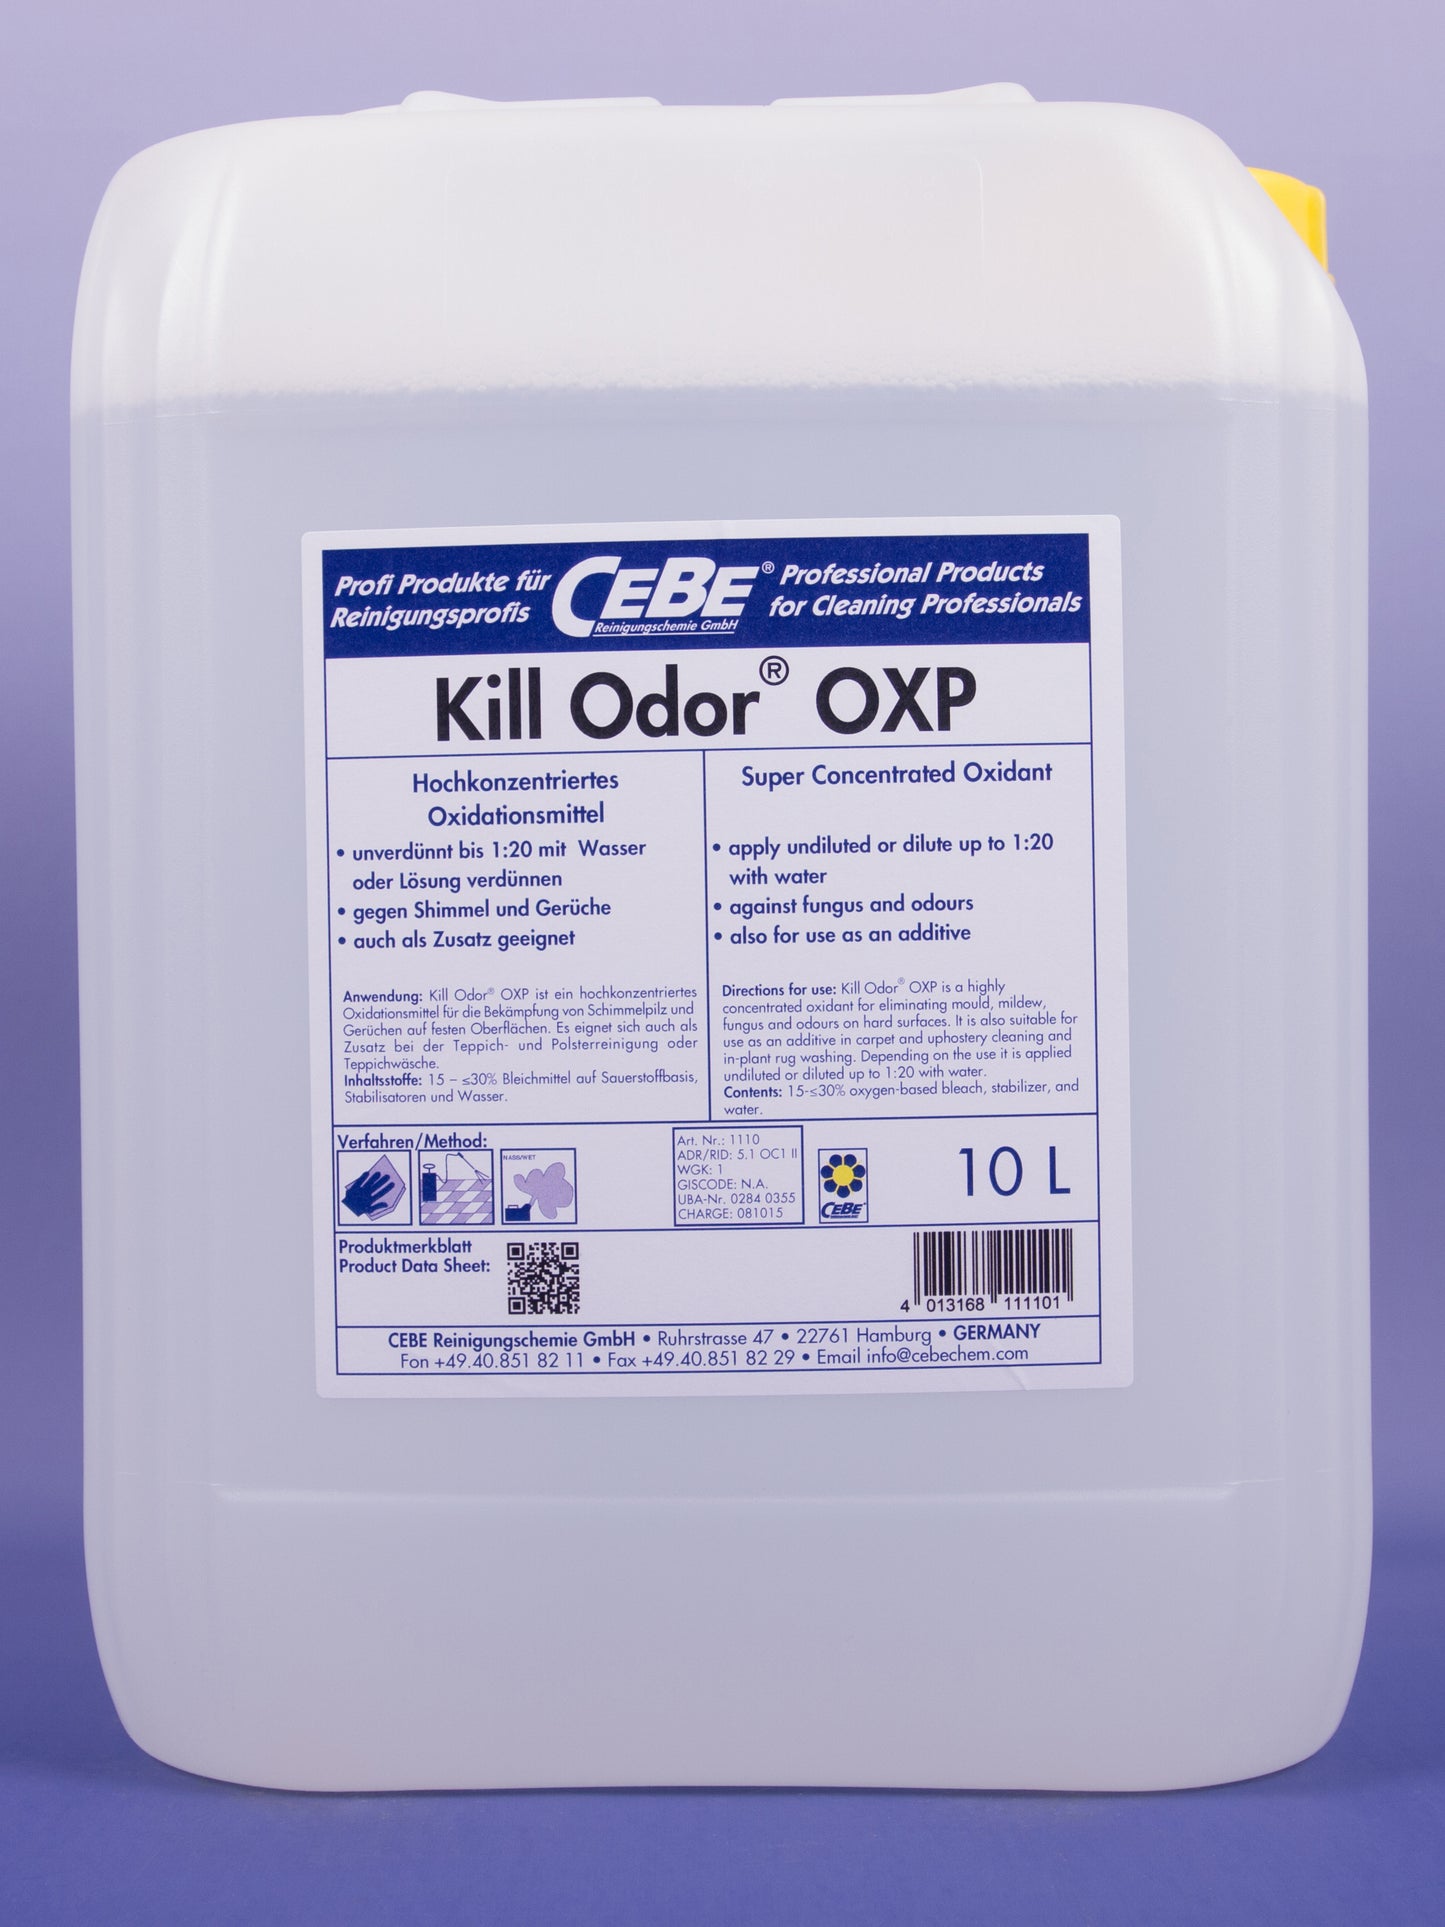 Kill Odor® OXP